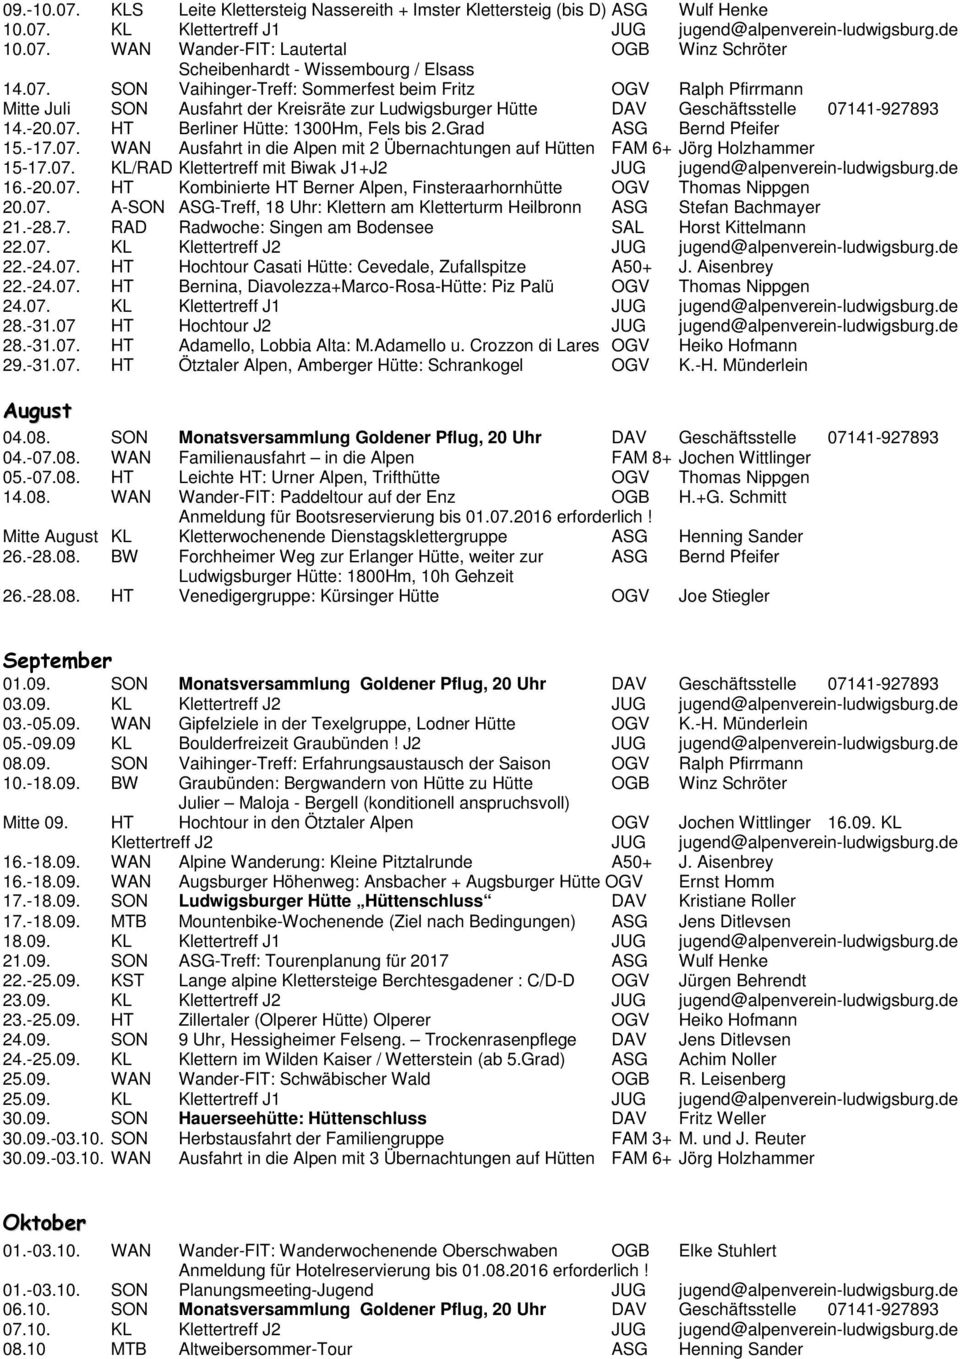 Grad ASG Bernd Pfeifer 15.-17.07. WAN Ausfahrt in die Alpen mit 2 Übernachtungen auf Hütten FAM 6+ Jörg Holzhammer 15-17.07. KL/RAD Klettertreff mit Biwak J1+J2 JUG jugend@alpenverein-ludwigsburg.